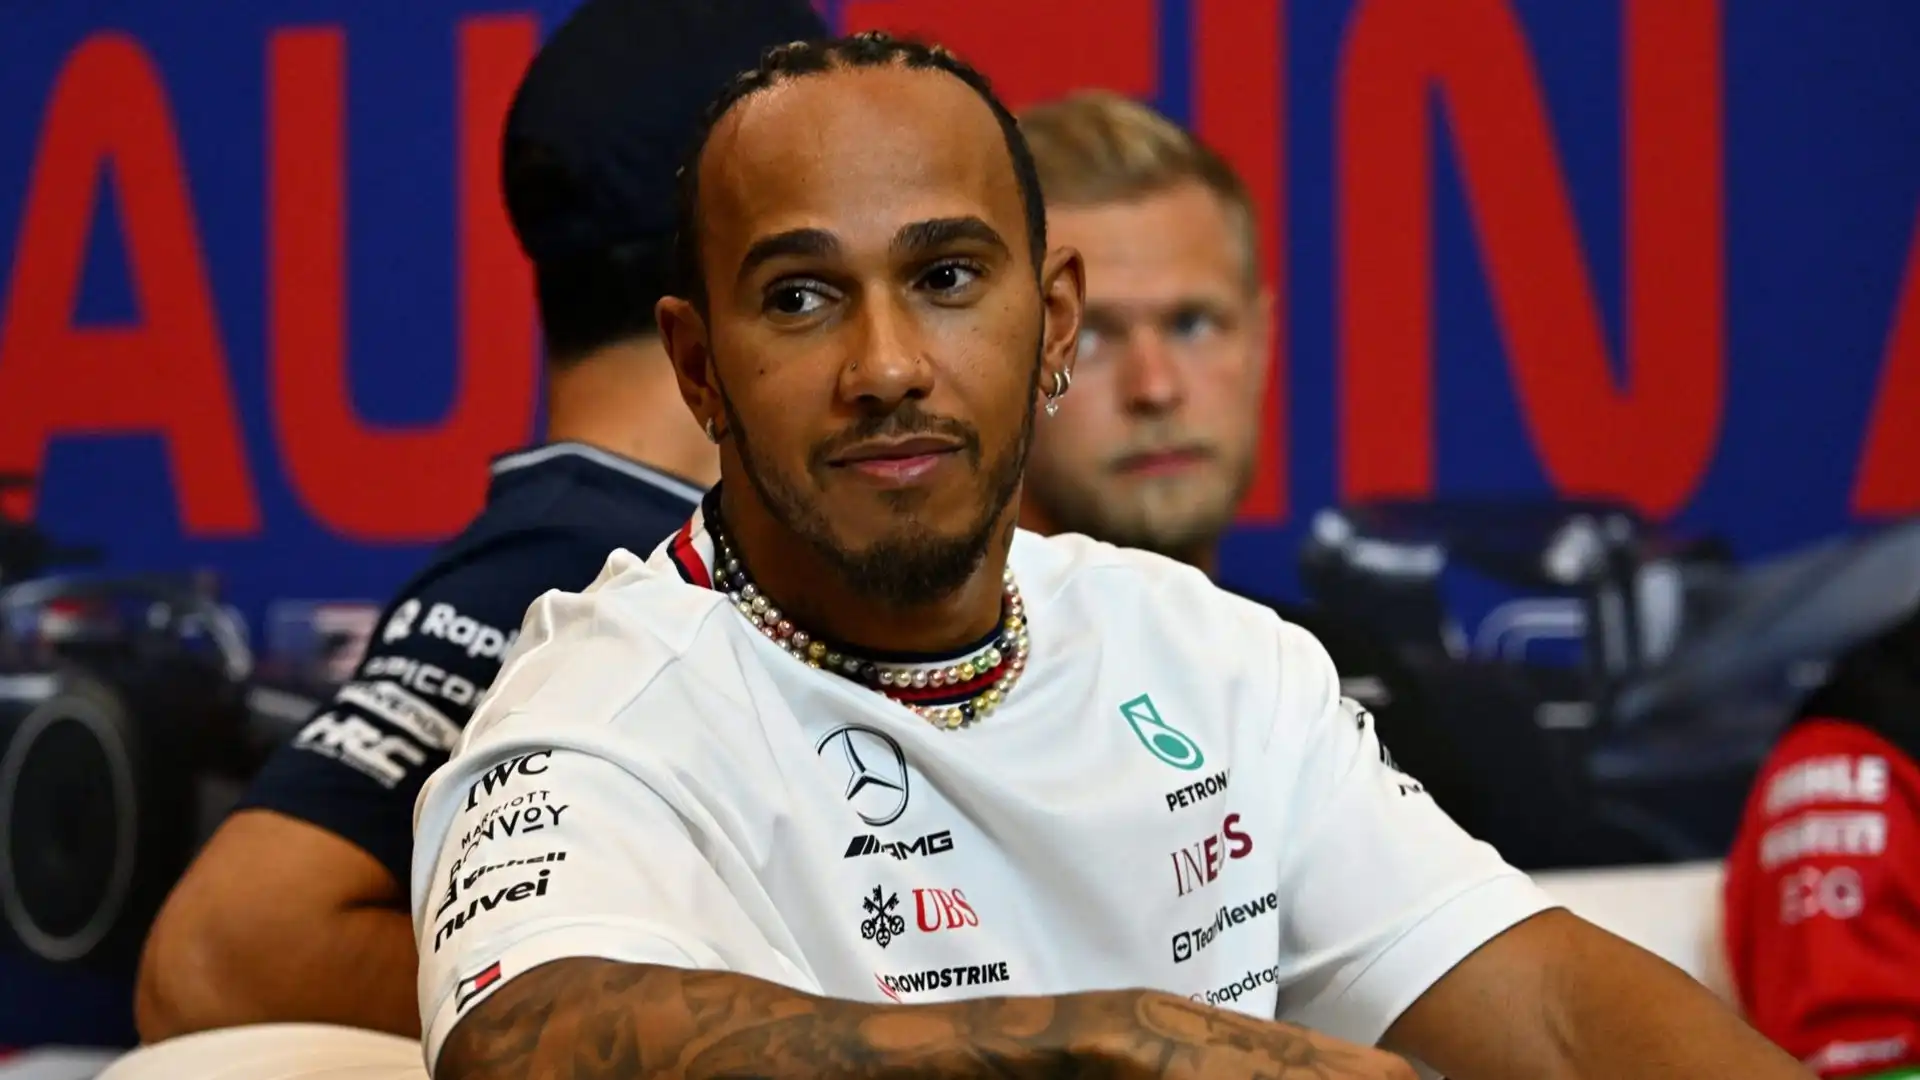 "Sono sicuro che sarà un progetto entusiasmante per Lewis provare a raggiungere il top con la Ferrari"